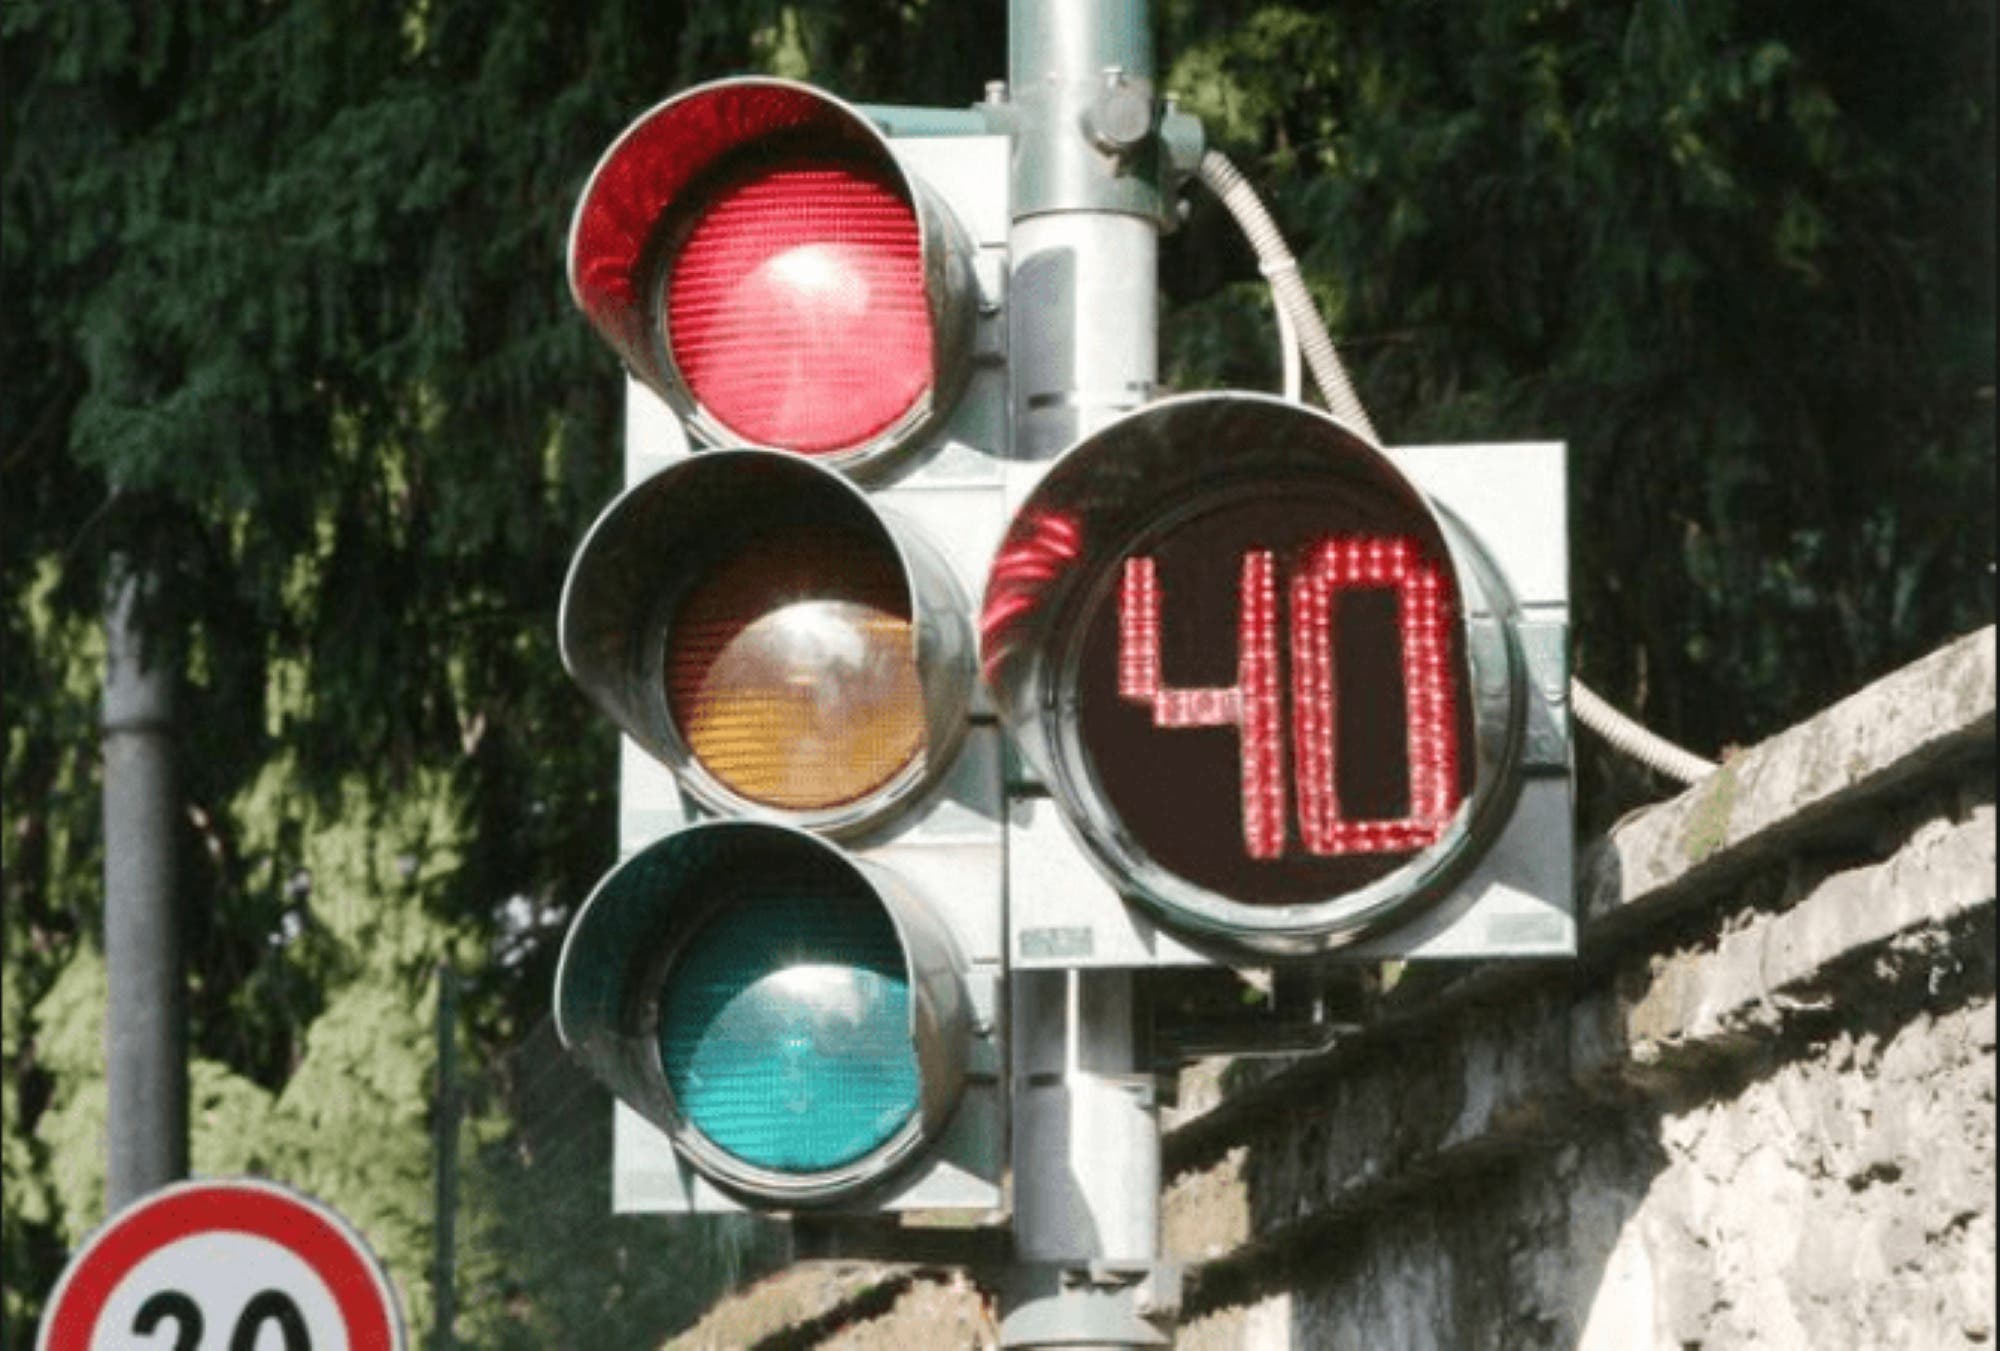 Semaforo con countdown: utile per la sicurezza stradale 